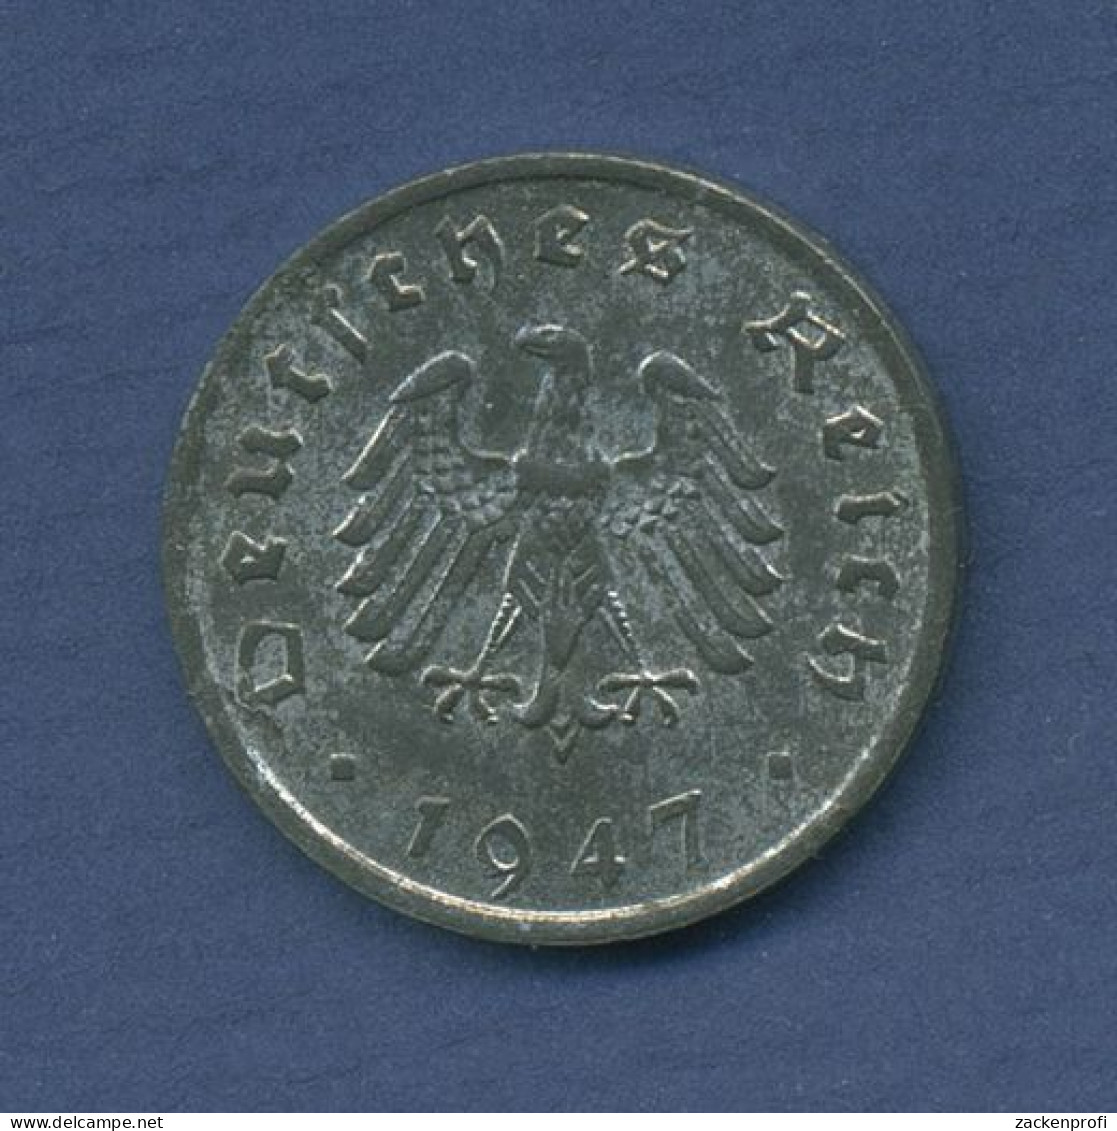 Alliierte Besetzung 10 Reichspfennig 1947 F, J 375, Vz (m6528) - 10 Reichspfennig